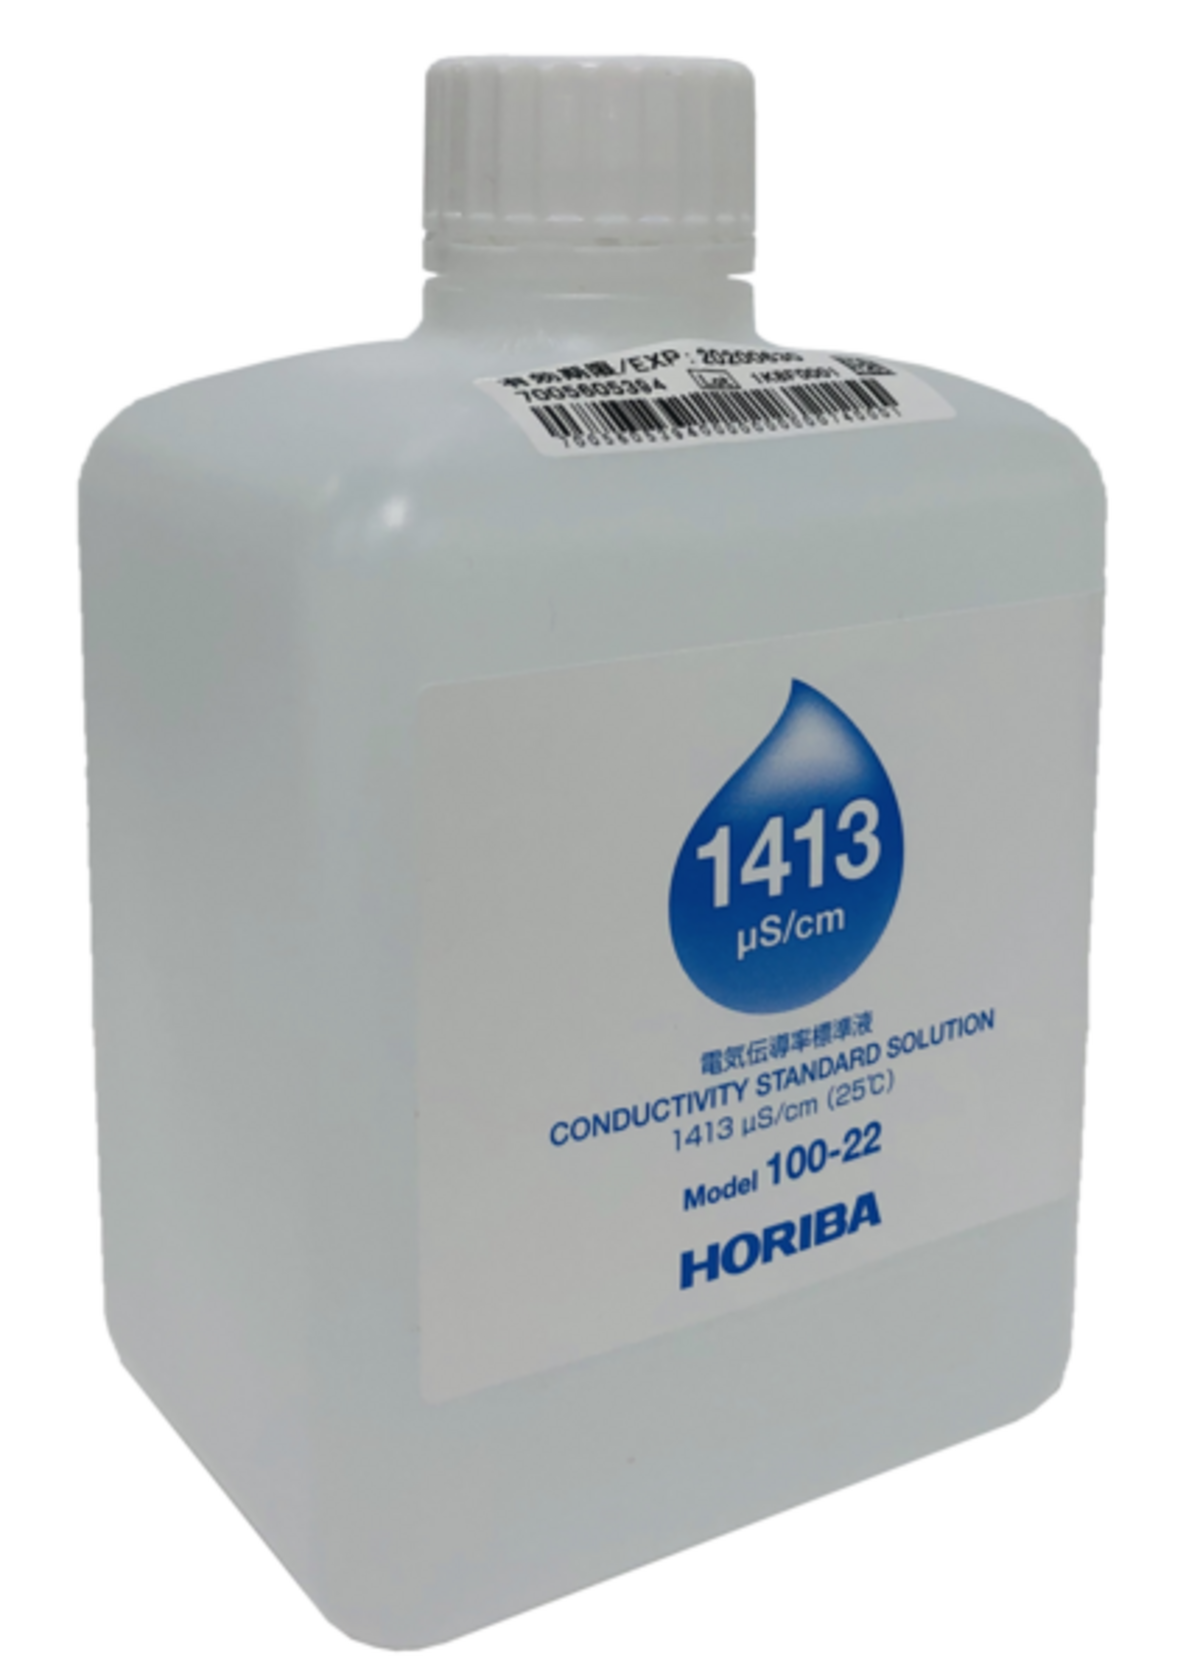 100-22 1413 μS/cm 導電率（電気伝導率）標準液 - HORIBA